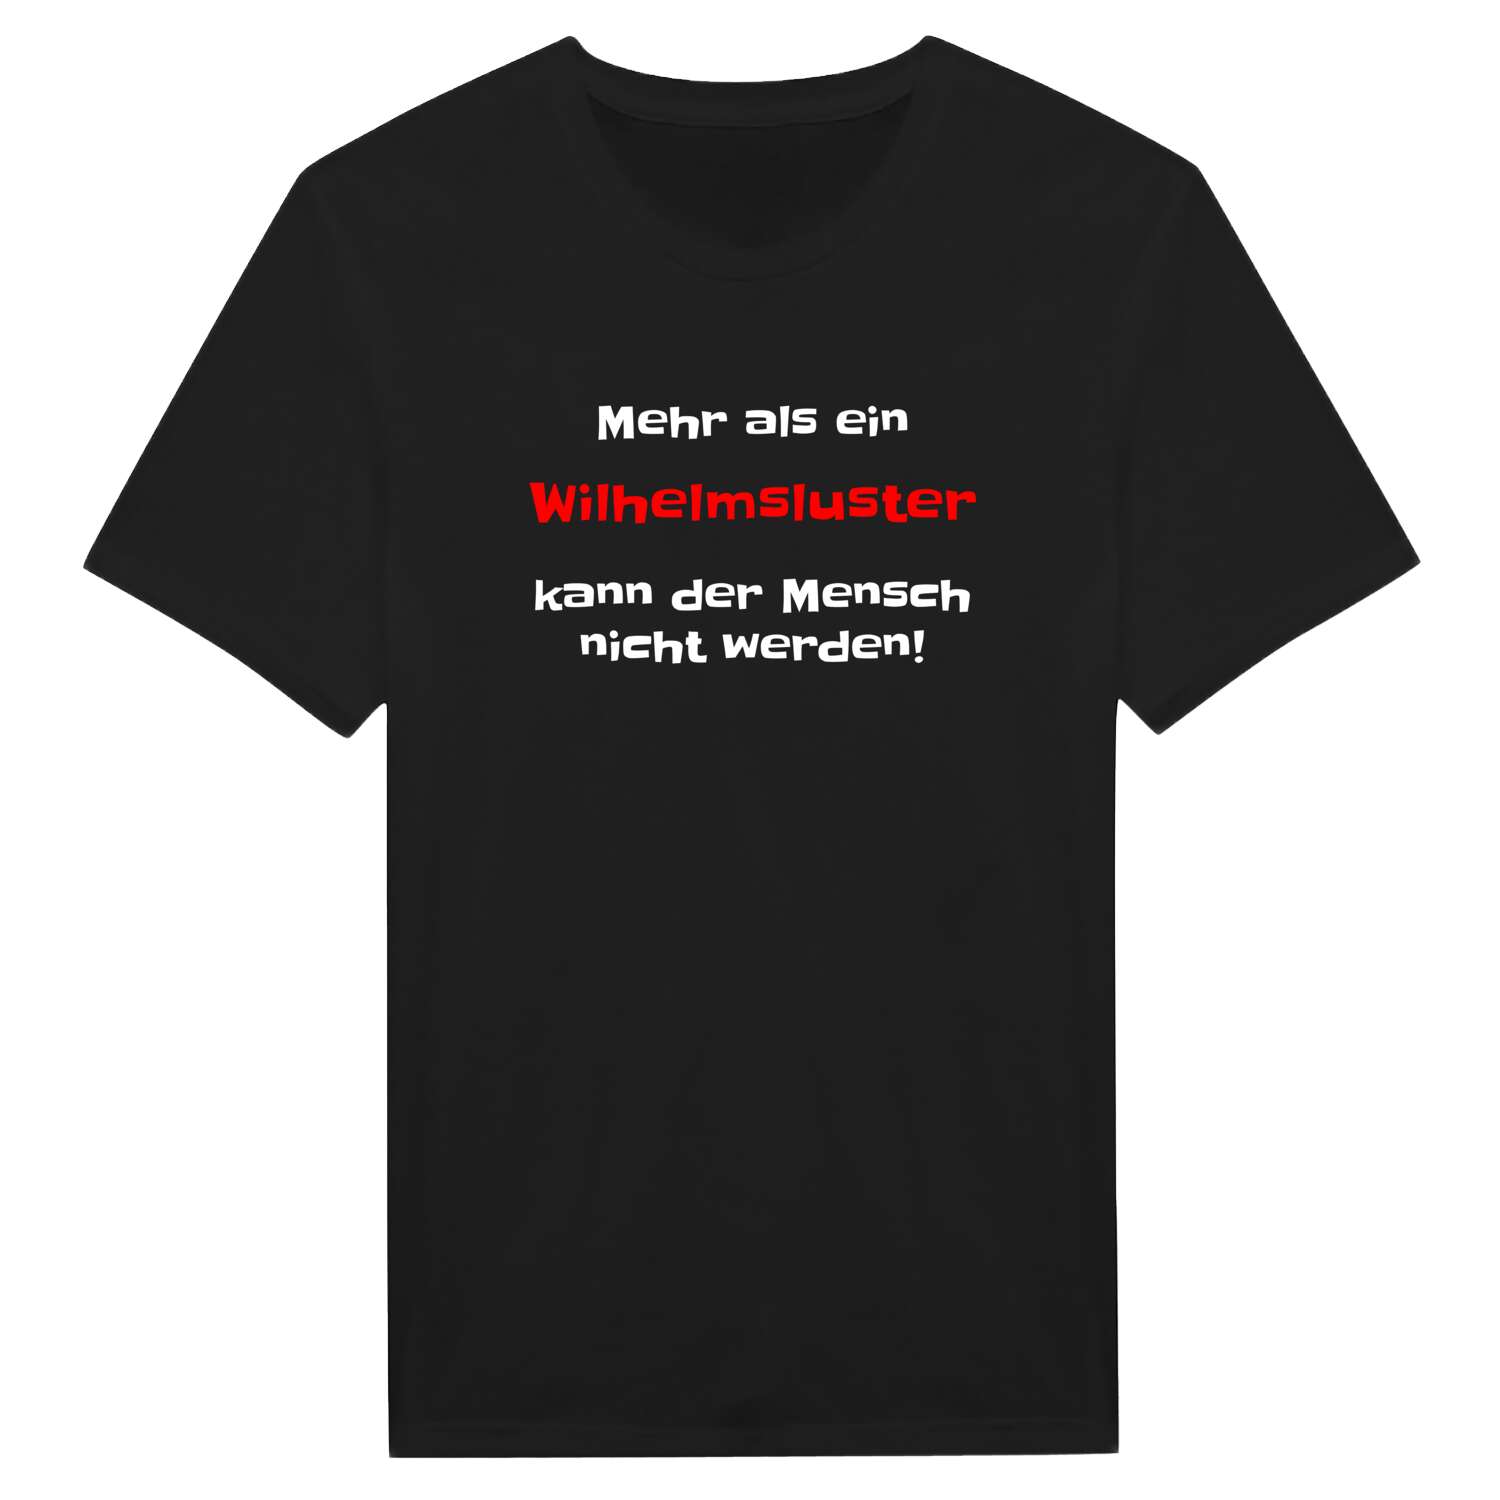 Wilhelmslust T-Shirt »Mehr als ein«